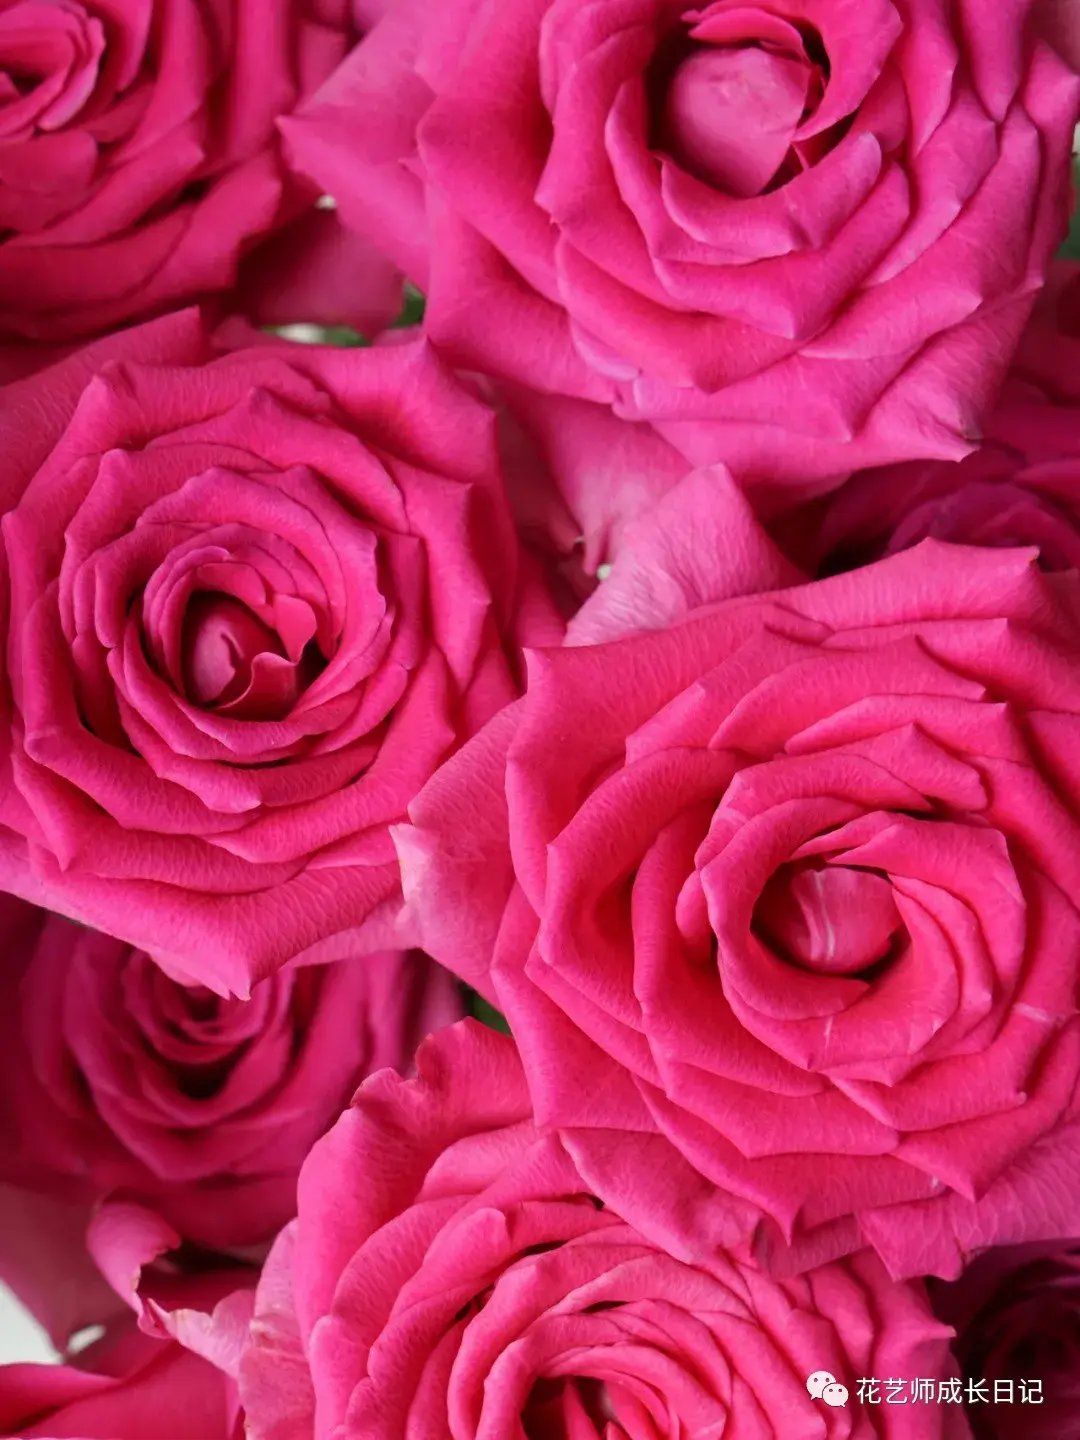 520新品9朵玫瑰秘境花园七夕情人节送女友闺蜜永生花弗洛伊德花盒-阿里巴巴